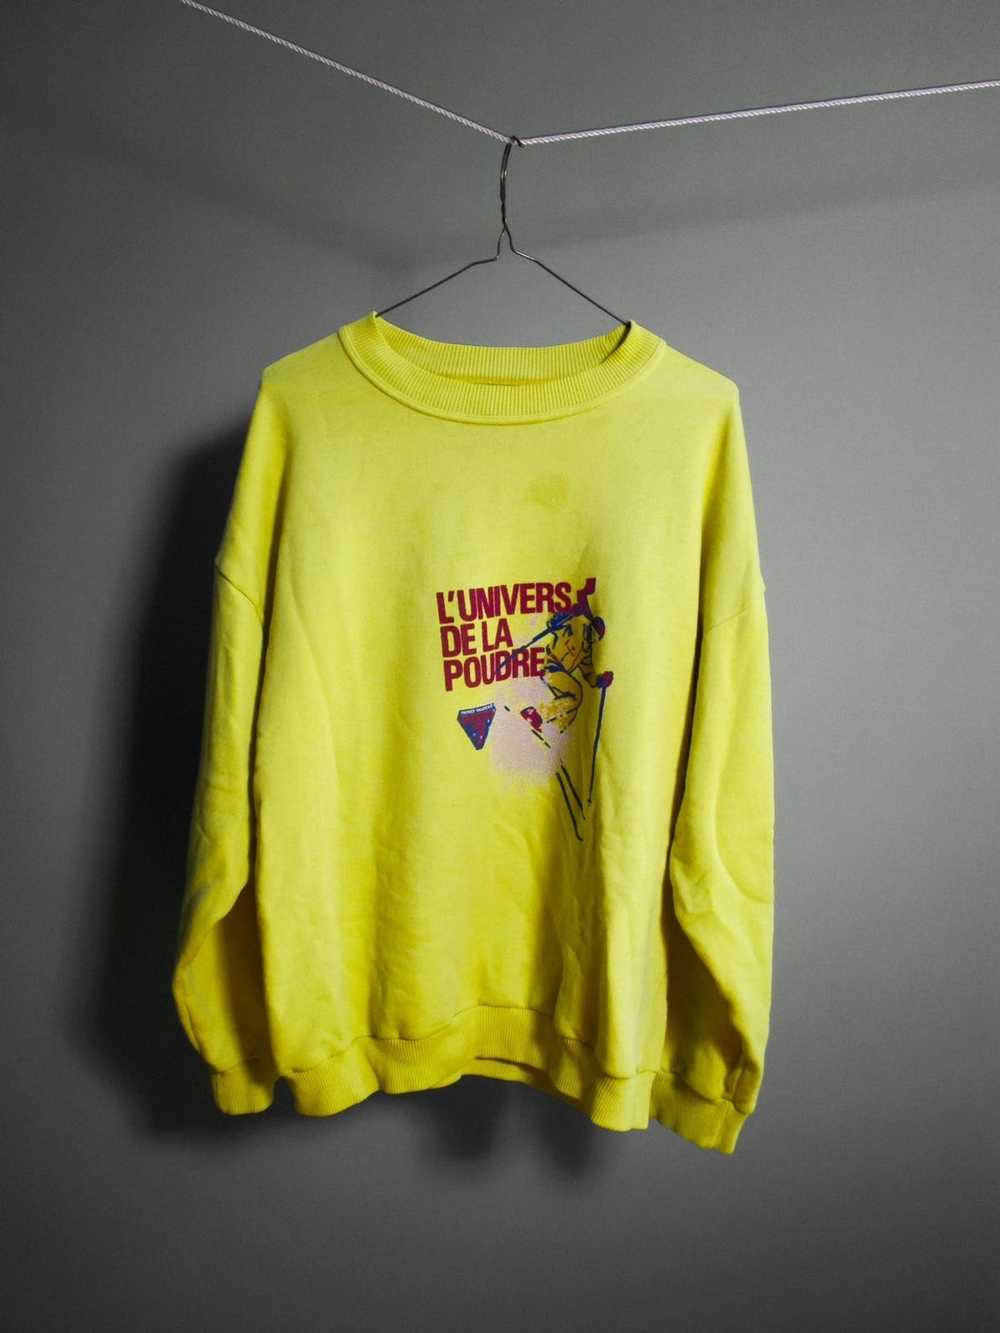 Vintage Neon Yellow Ski Sweatshirt - image 1